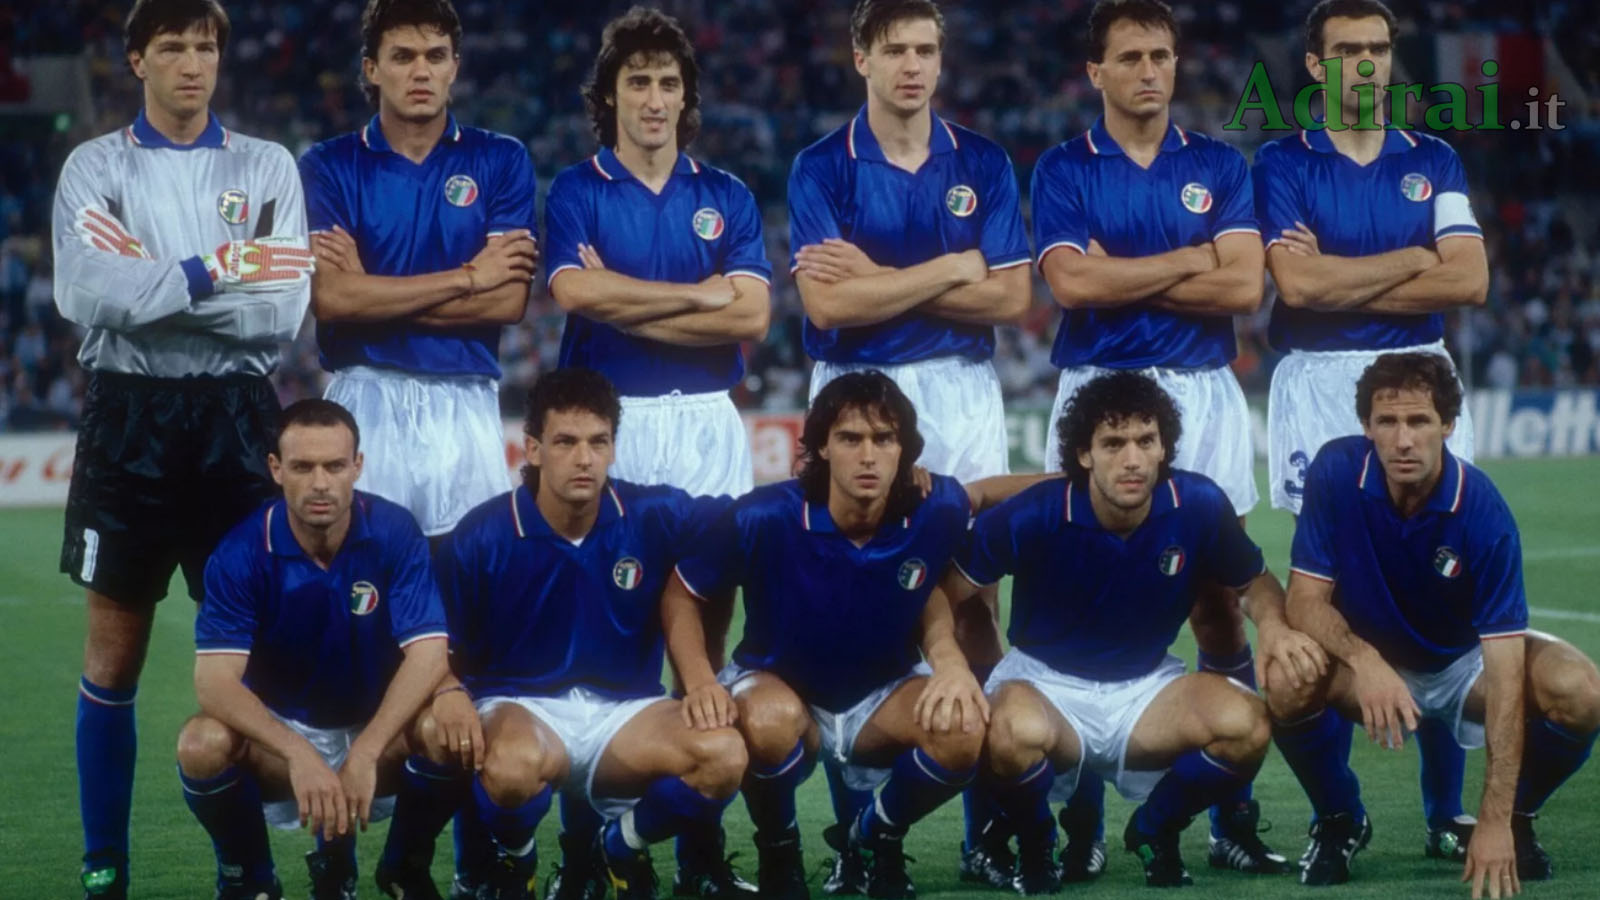 mondiali-calcio-italia-1990-nazionale-italiana.jpg